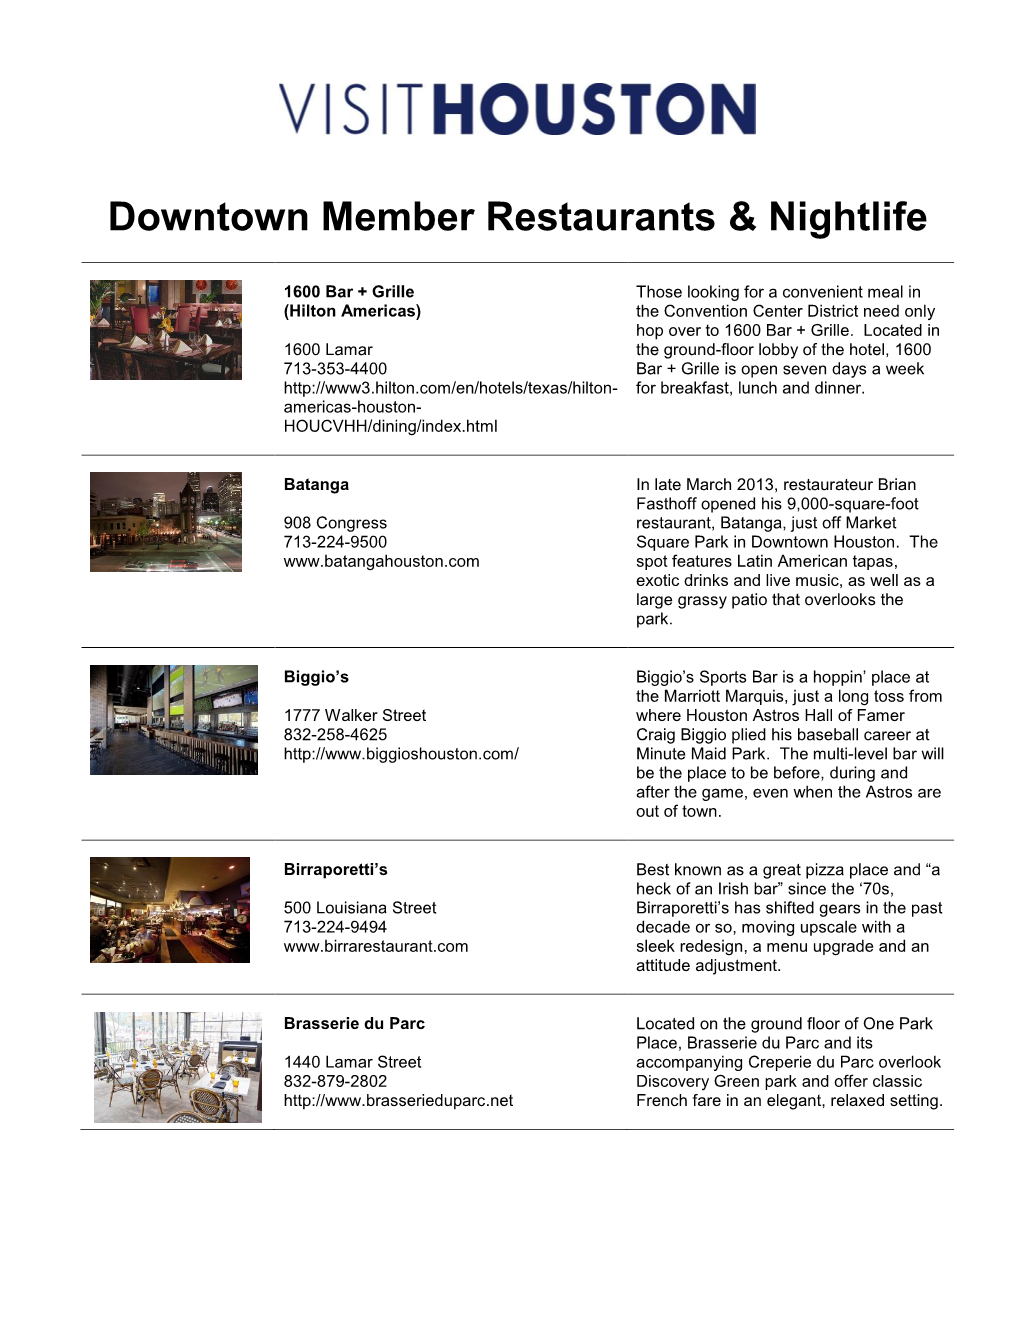 Houston's Downtown Member Restaurants